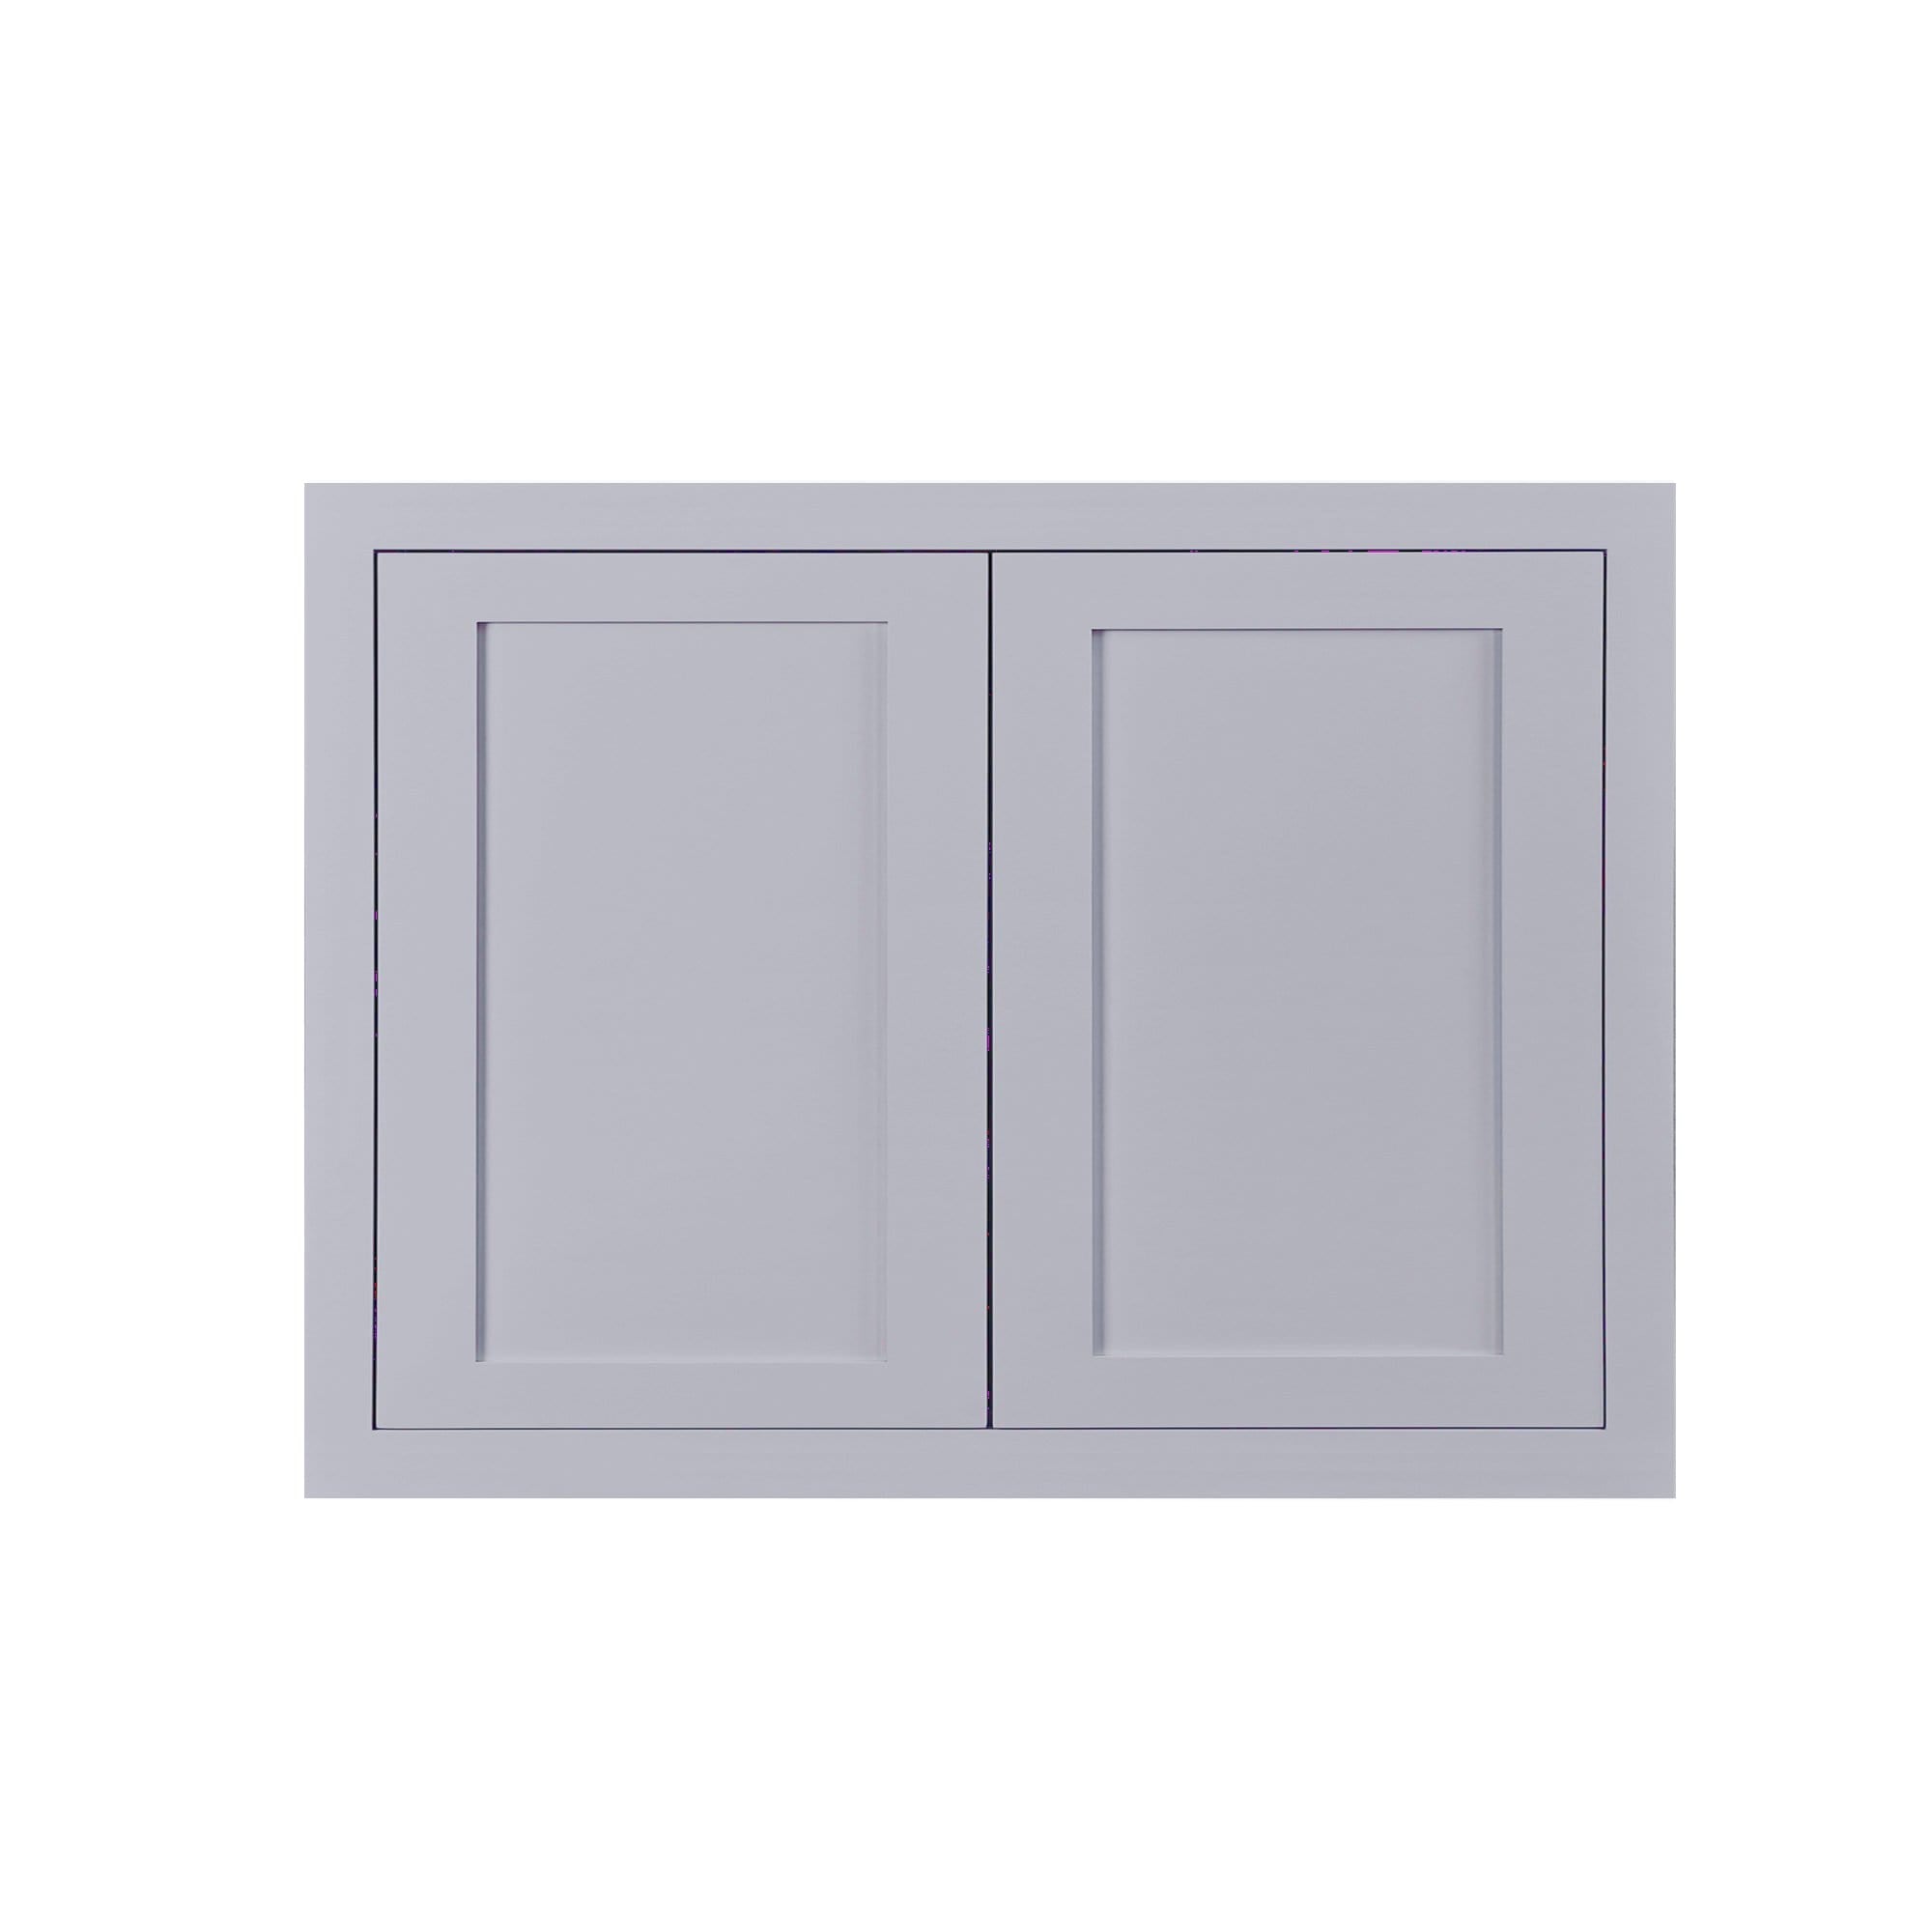 30" Wide Bridge Light Gray Inset Shaker Wall Cabinet - Double Door 24" Tall